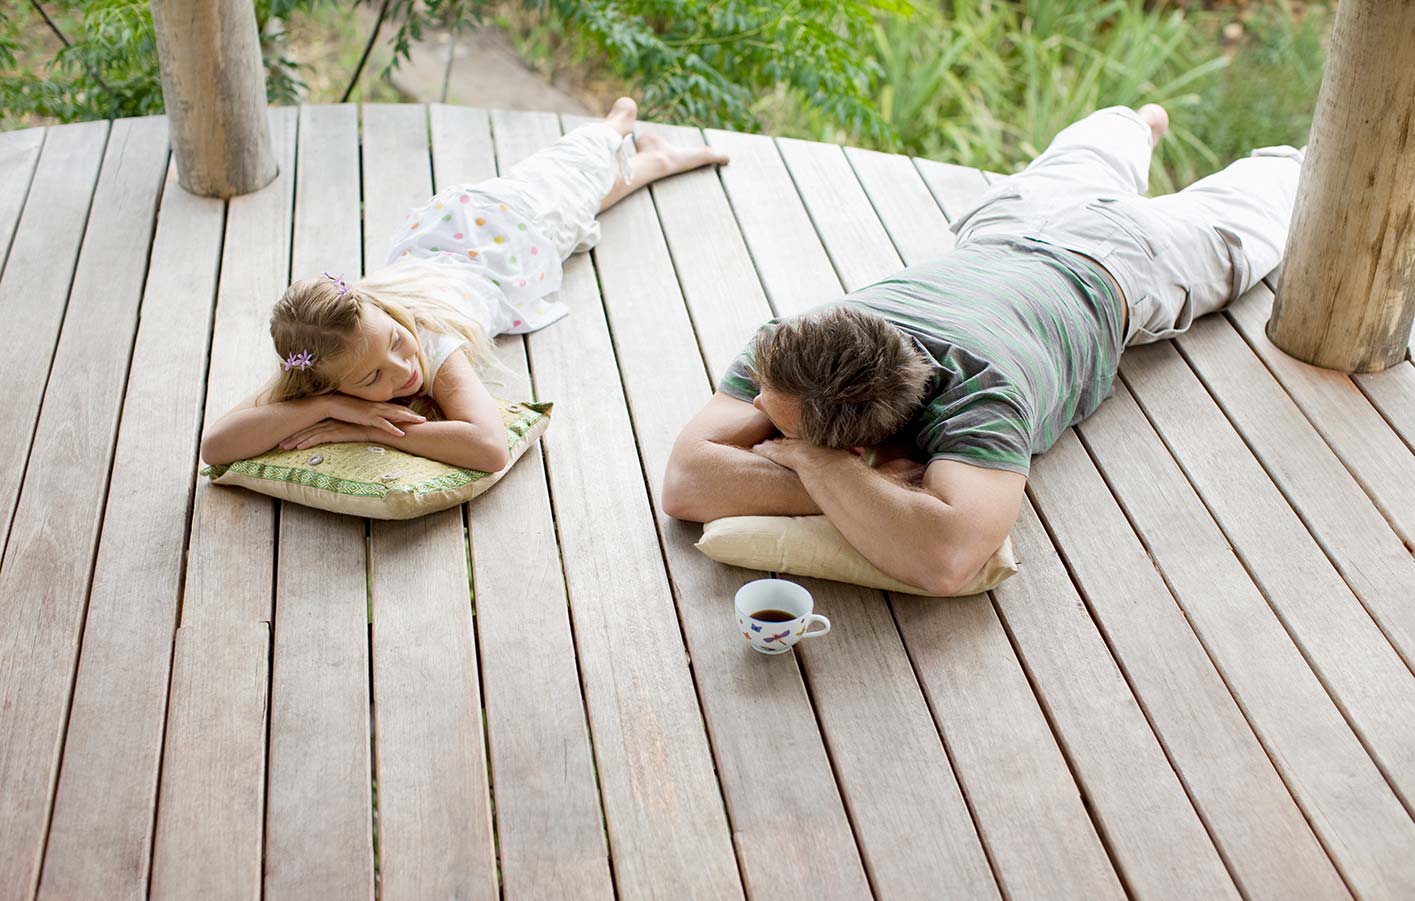 Vater und Tochter liegen auf einer Holz-Terrasse